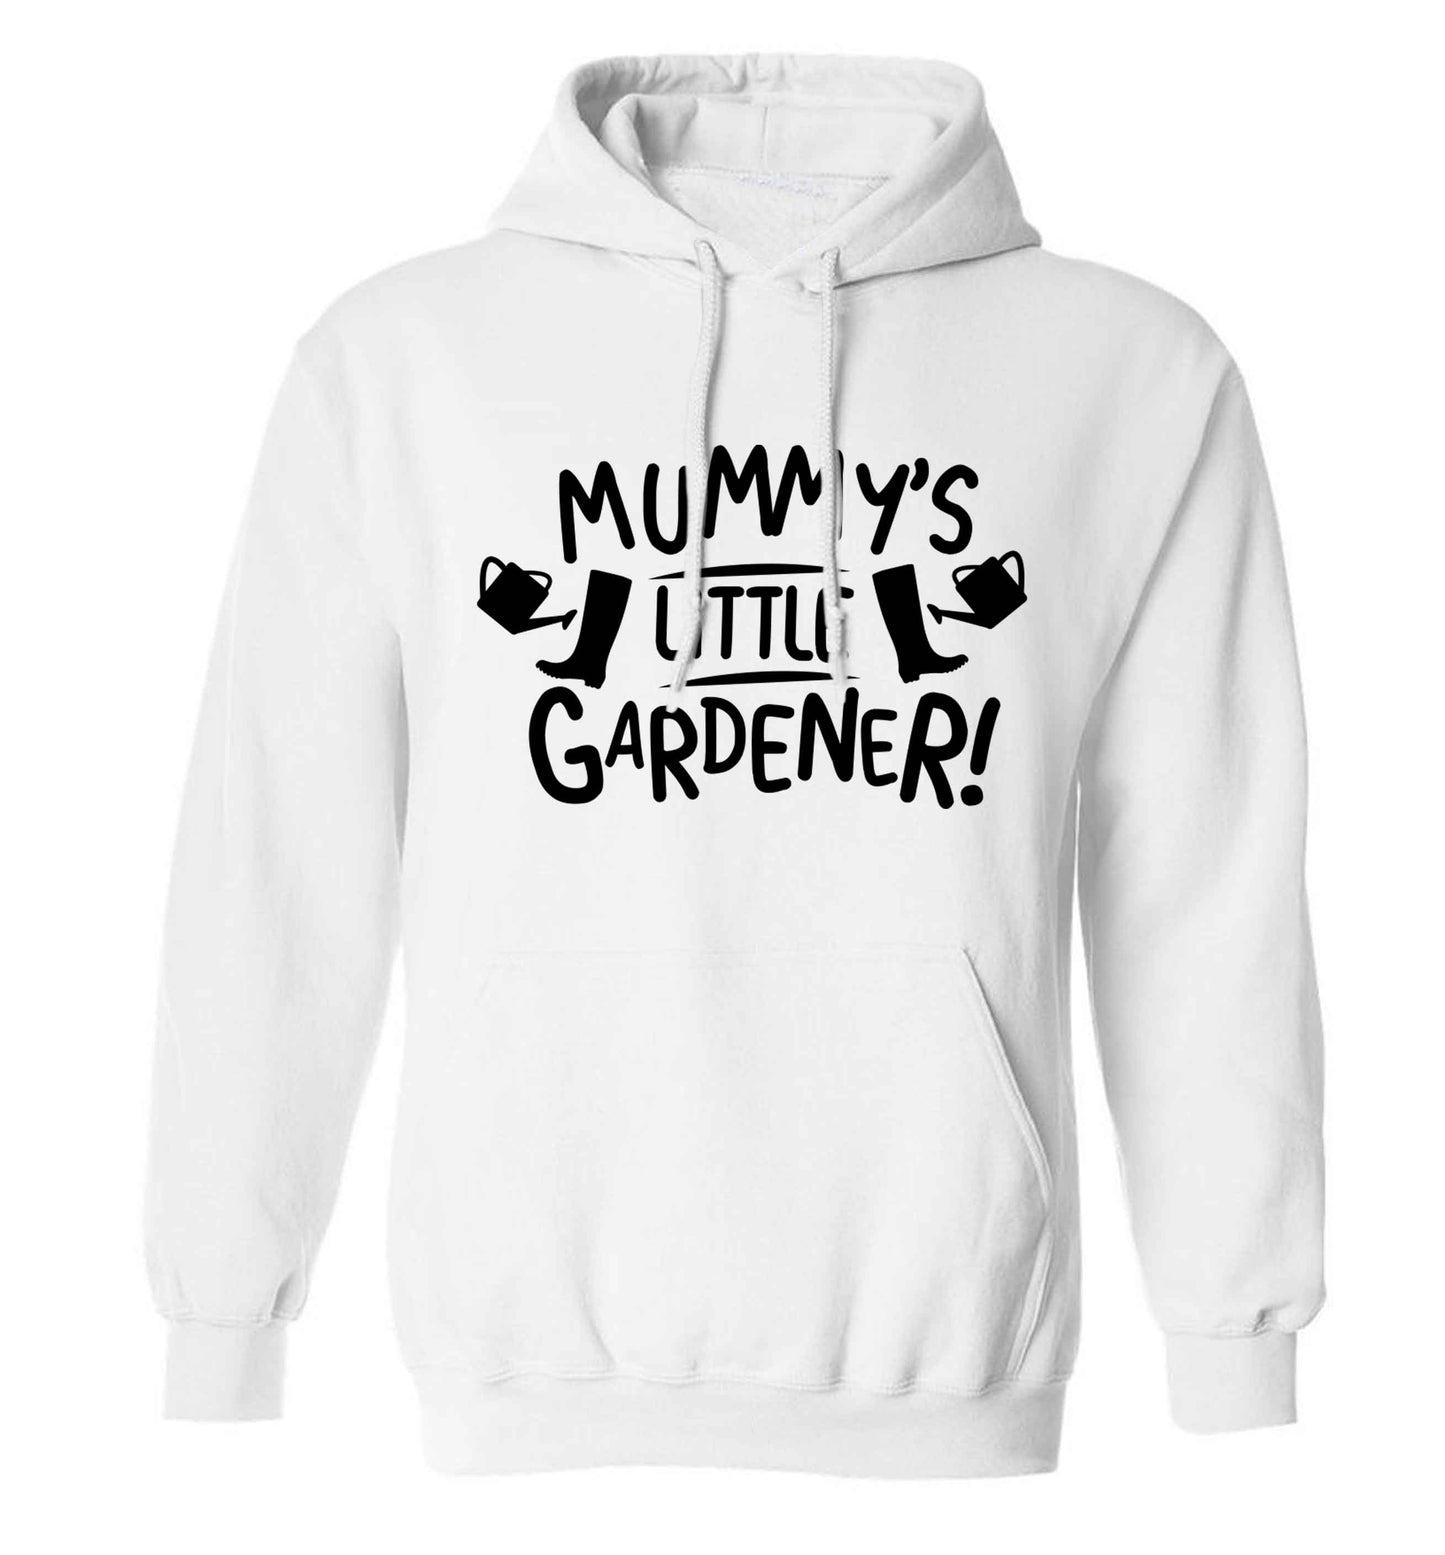 Mummy's little gardener adults unisex white hoodie 2XL